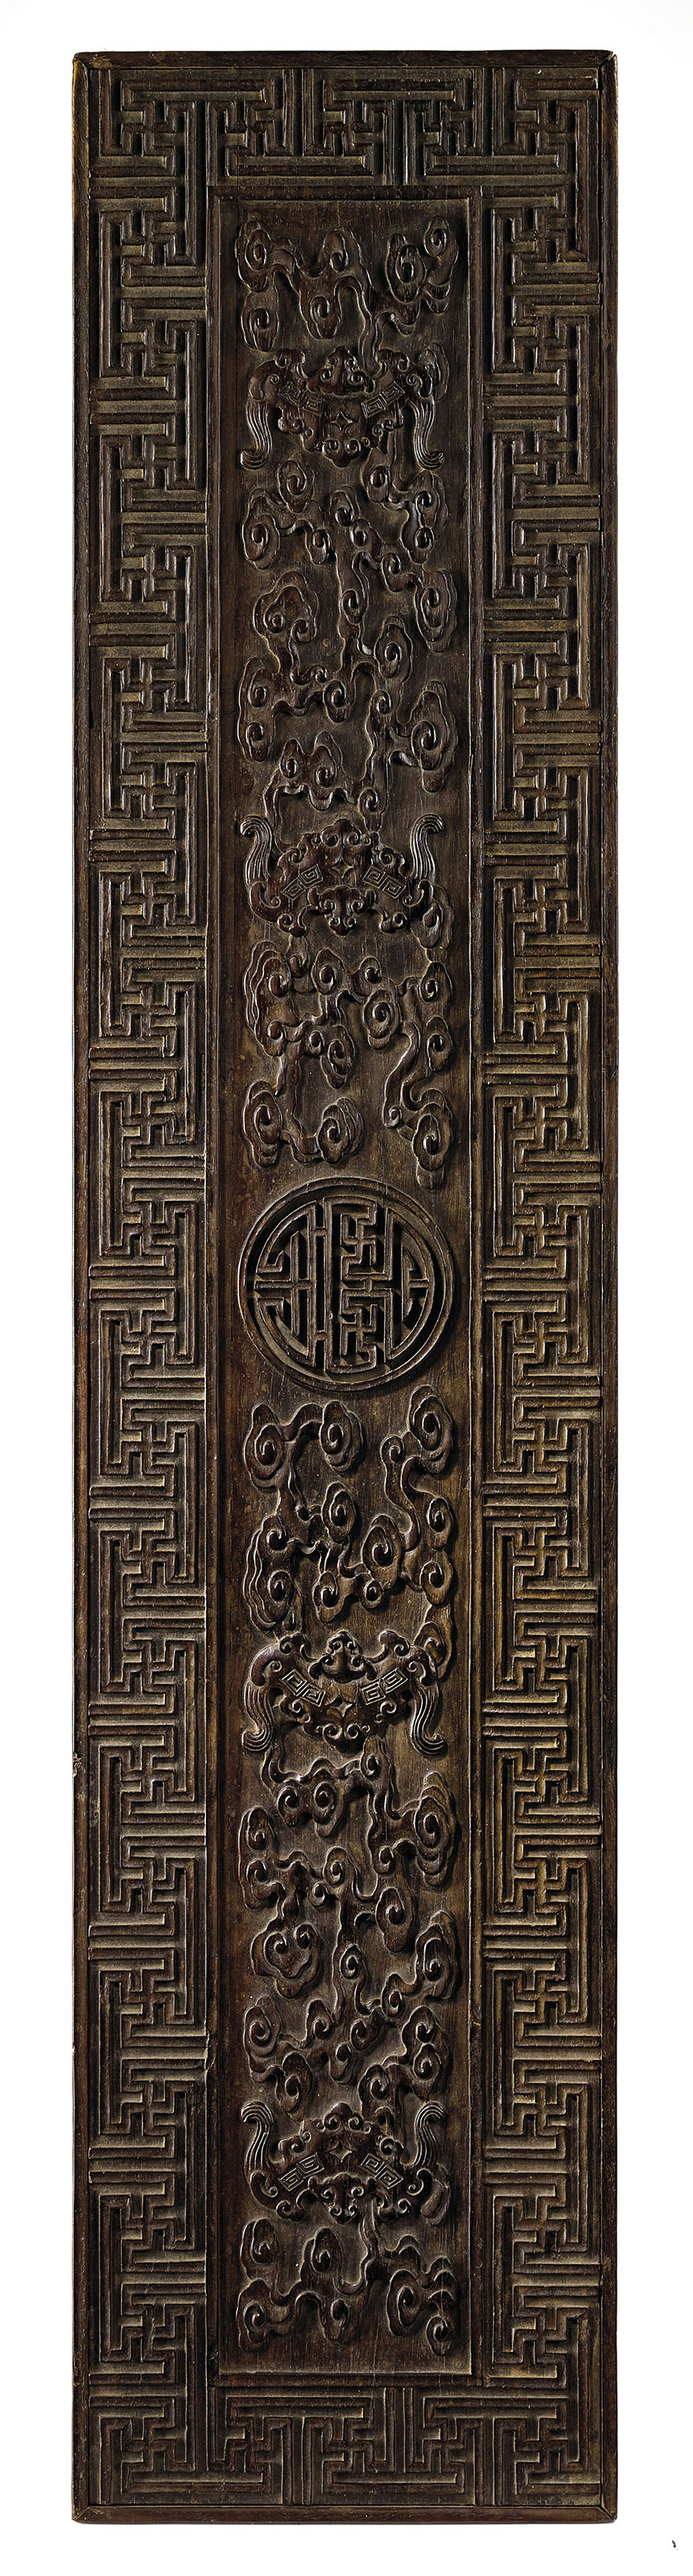 拍品60 清十九世紀 紫檀洪福齊天紋大畫盒